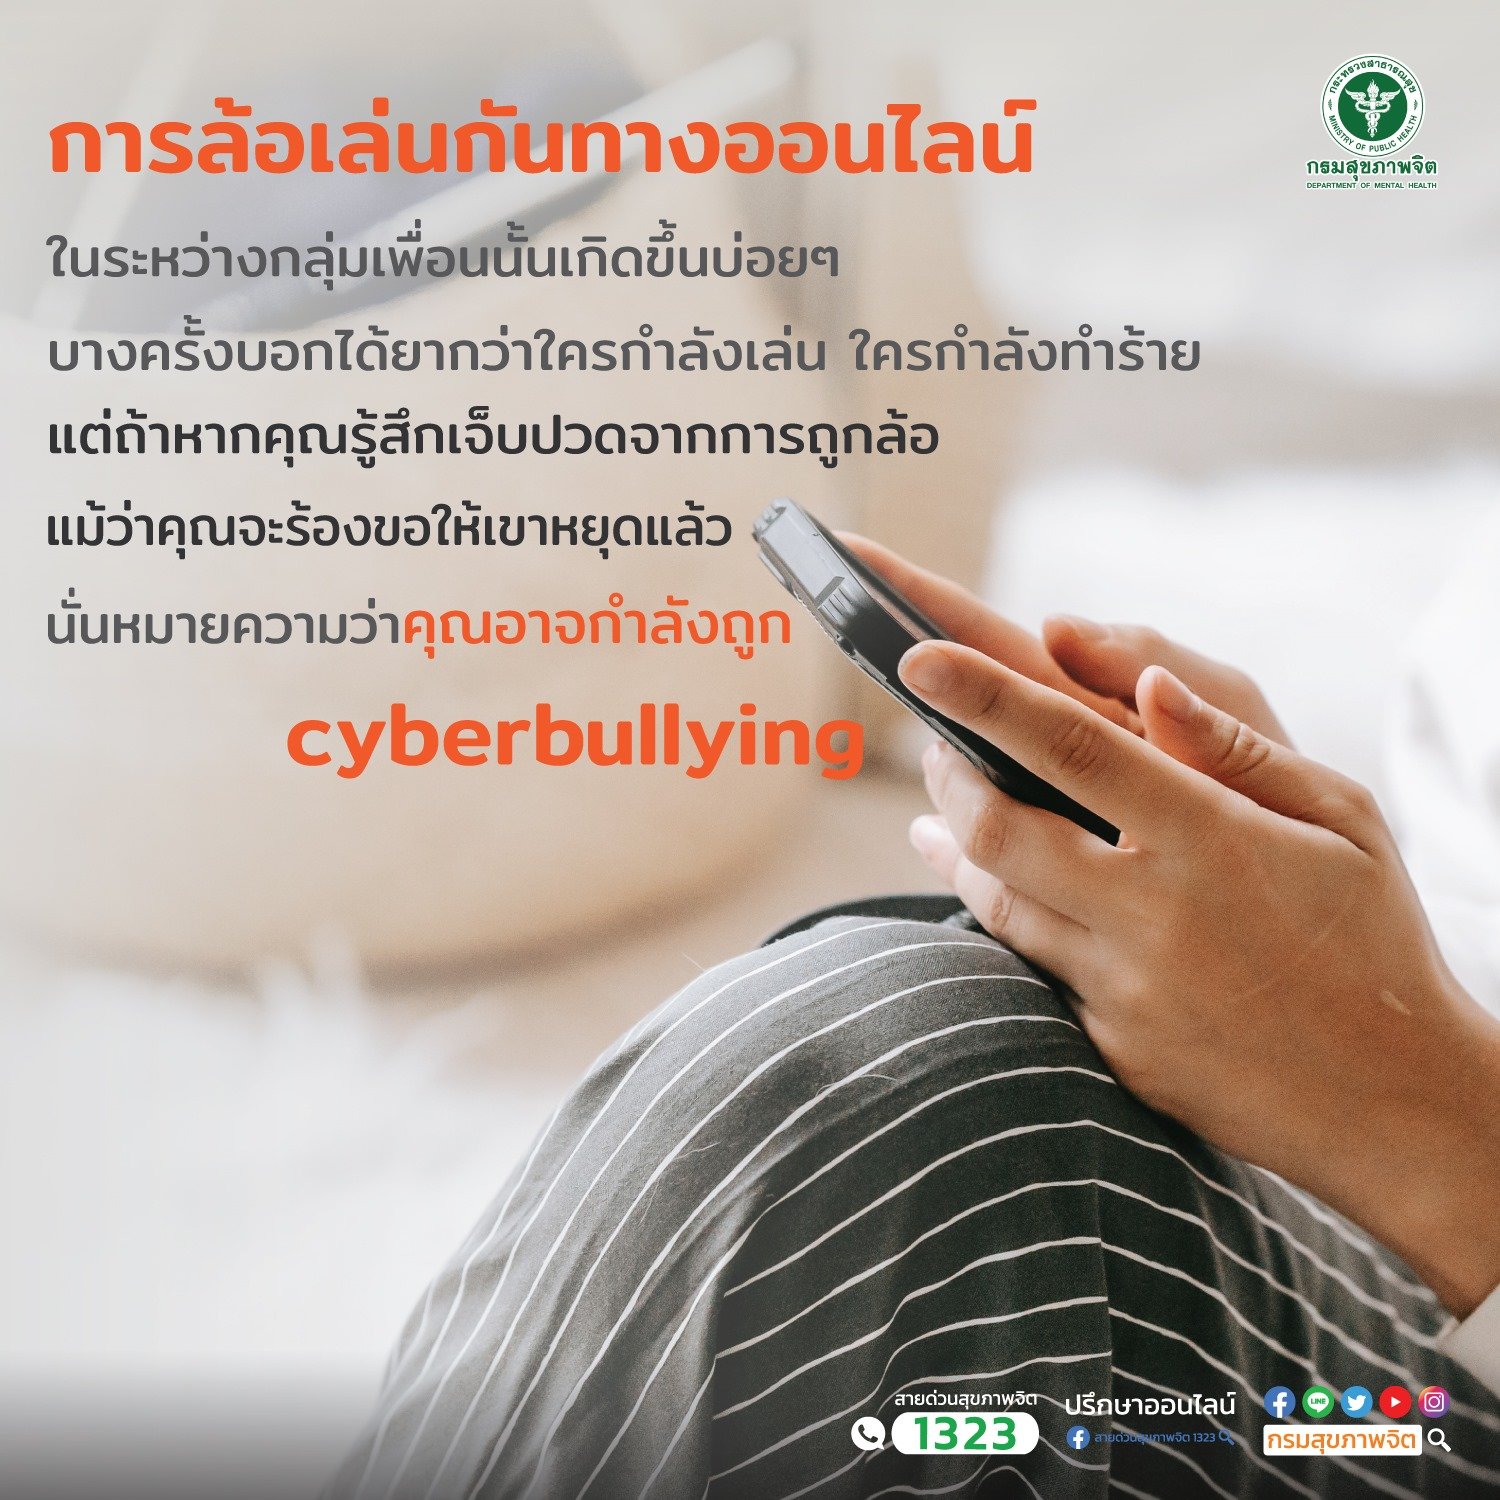 การล้อเล่นกันทางออนไลน์ (Cyberbullying)